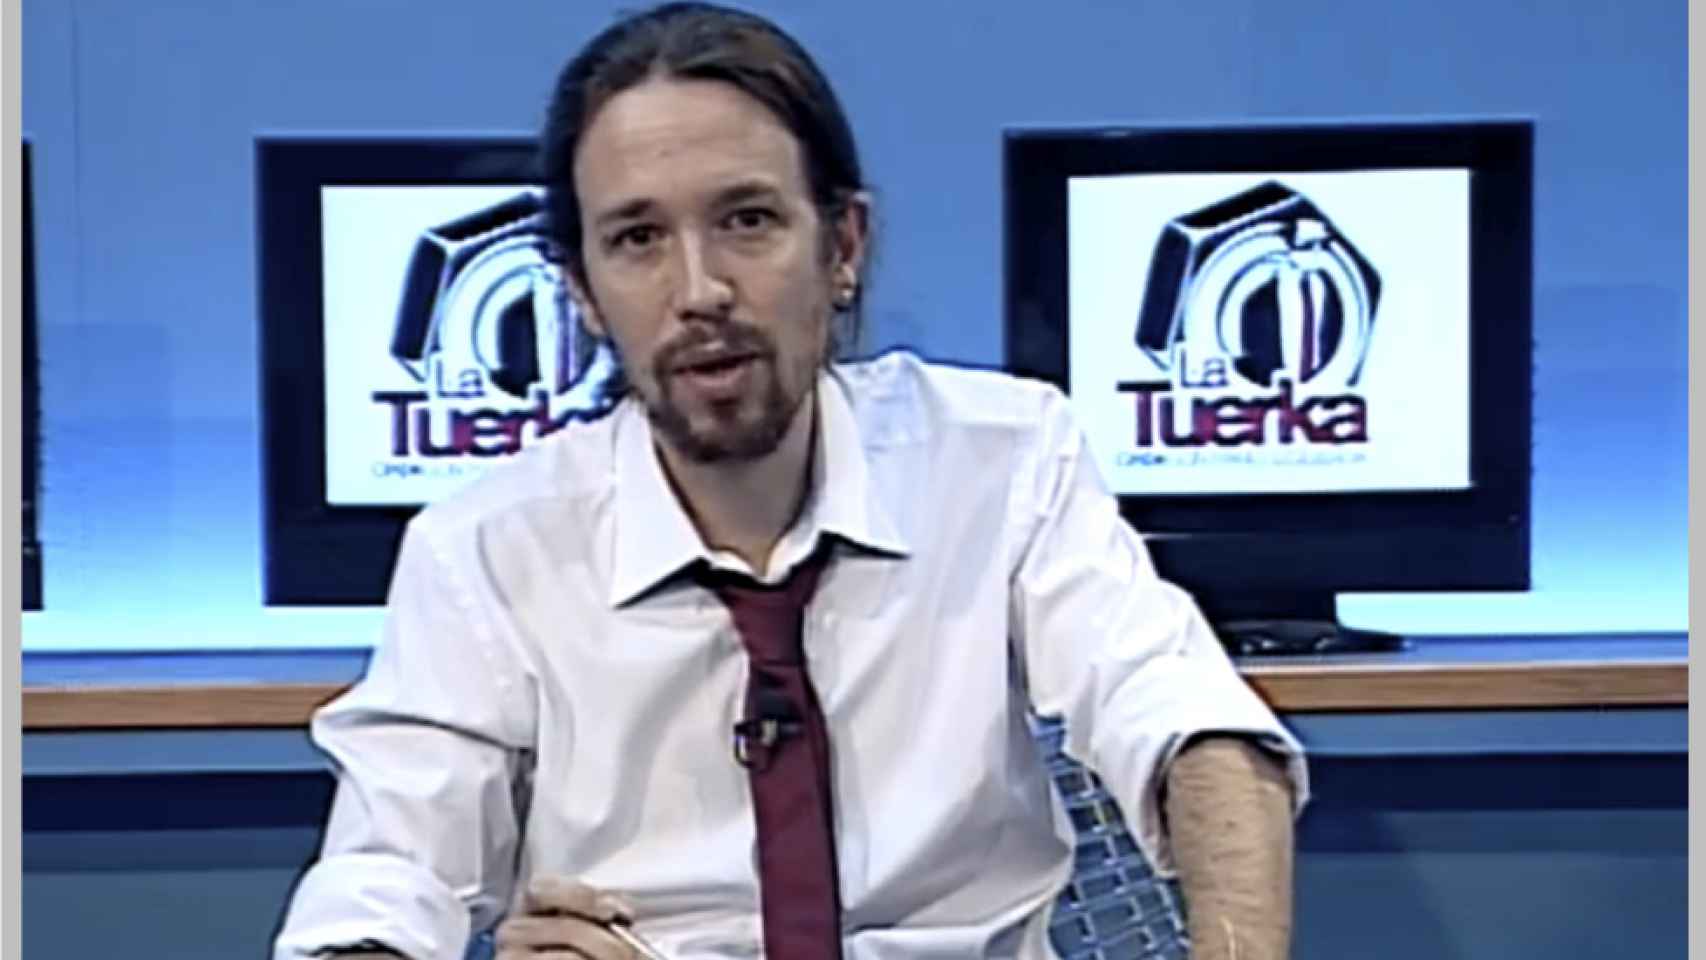 Cierra 'La Tuerka', el programa que lanzó al estrellato a Pablo Iglesias